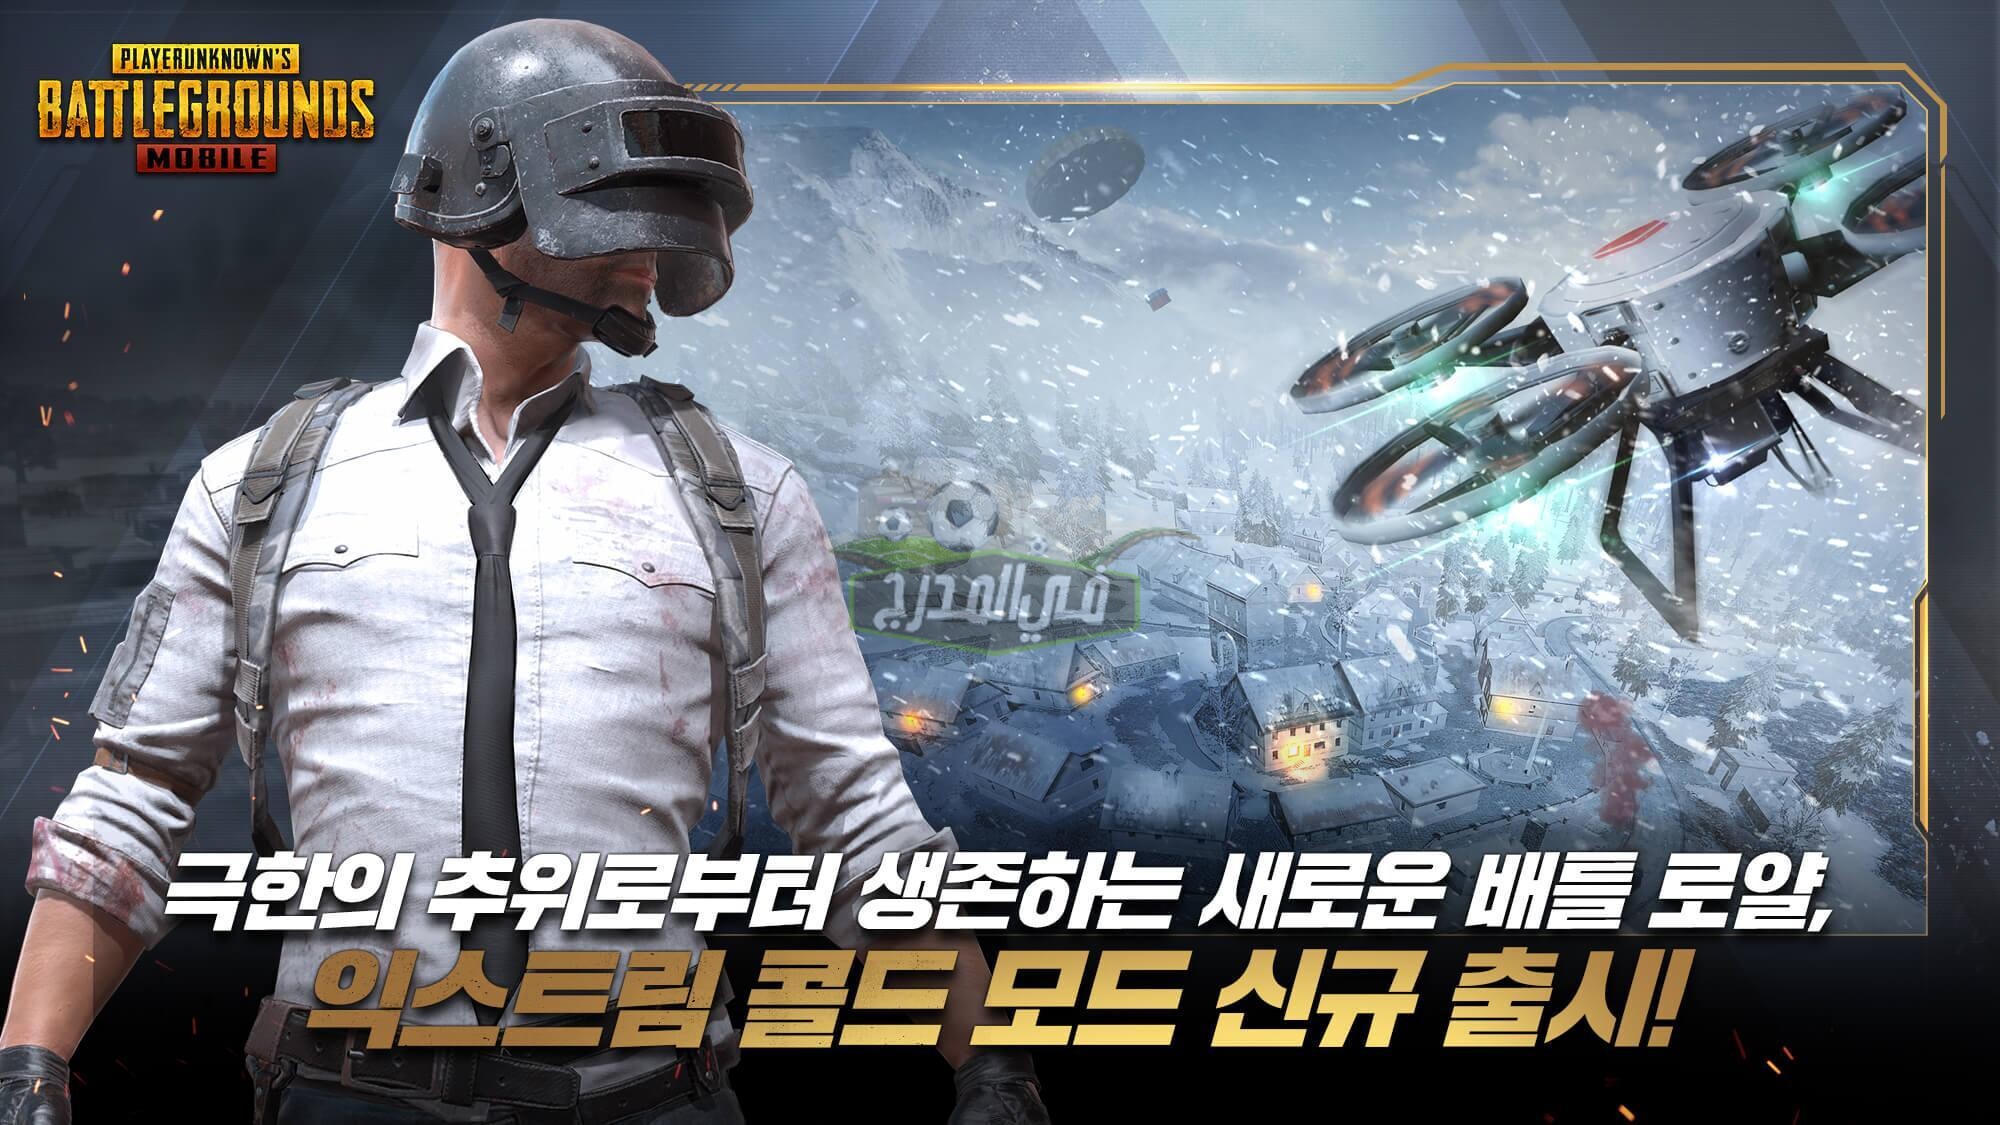 تحميل لعبة ببجي موبايل الكورية 1.3 PUBG MOBILE KR الإصدار الجديد.. مميزات وطريقة تحميل ببجي الكورية